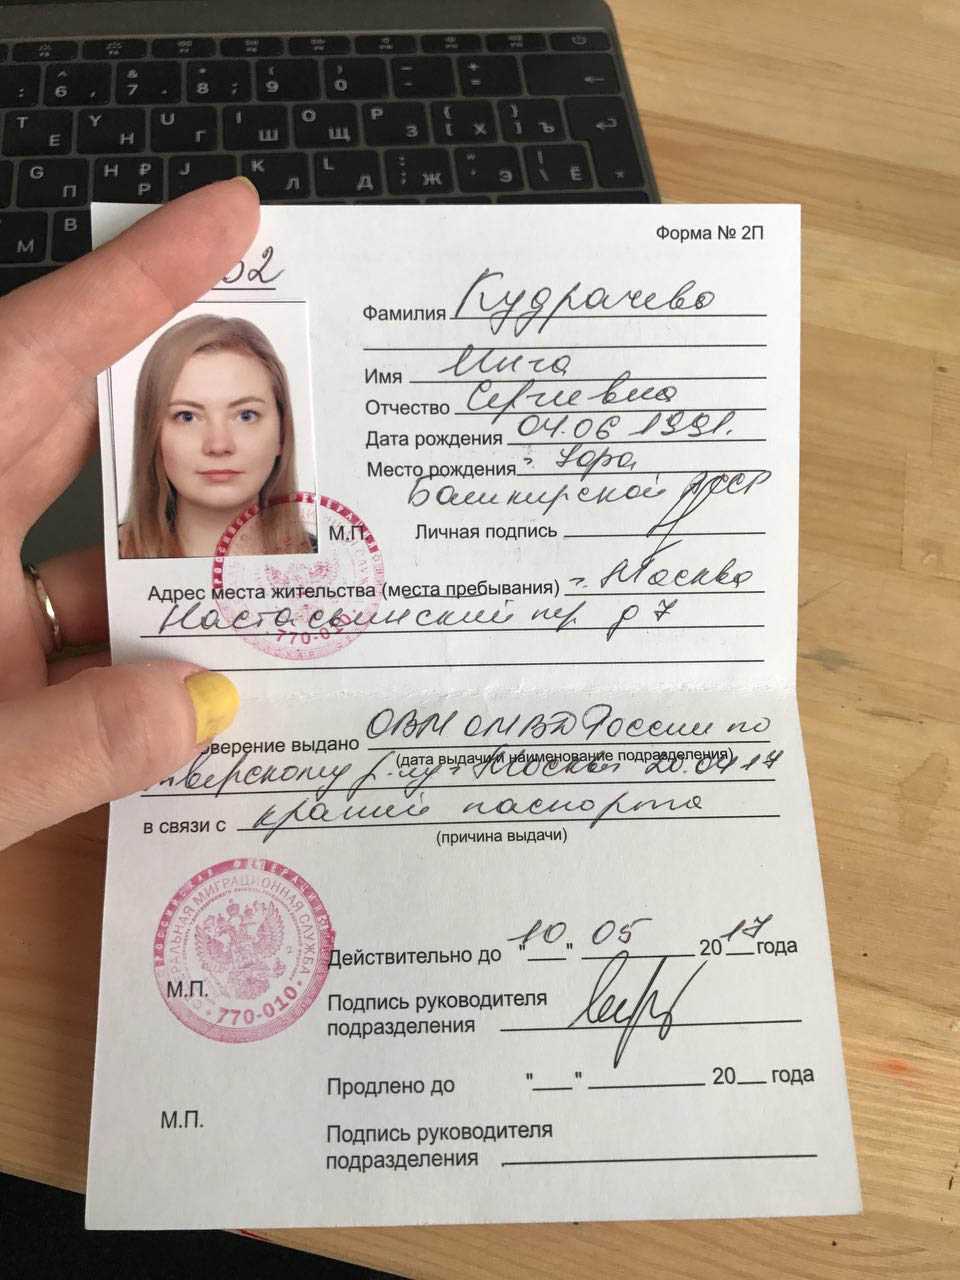 Паспорт рф 14 лет фото на паспорт